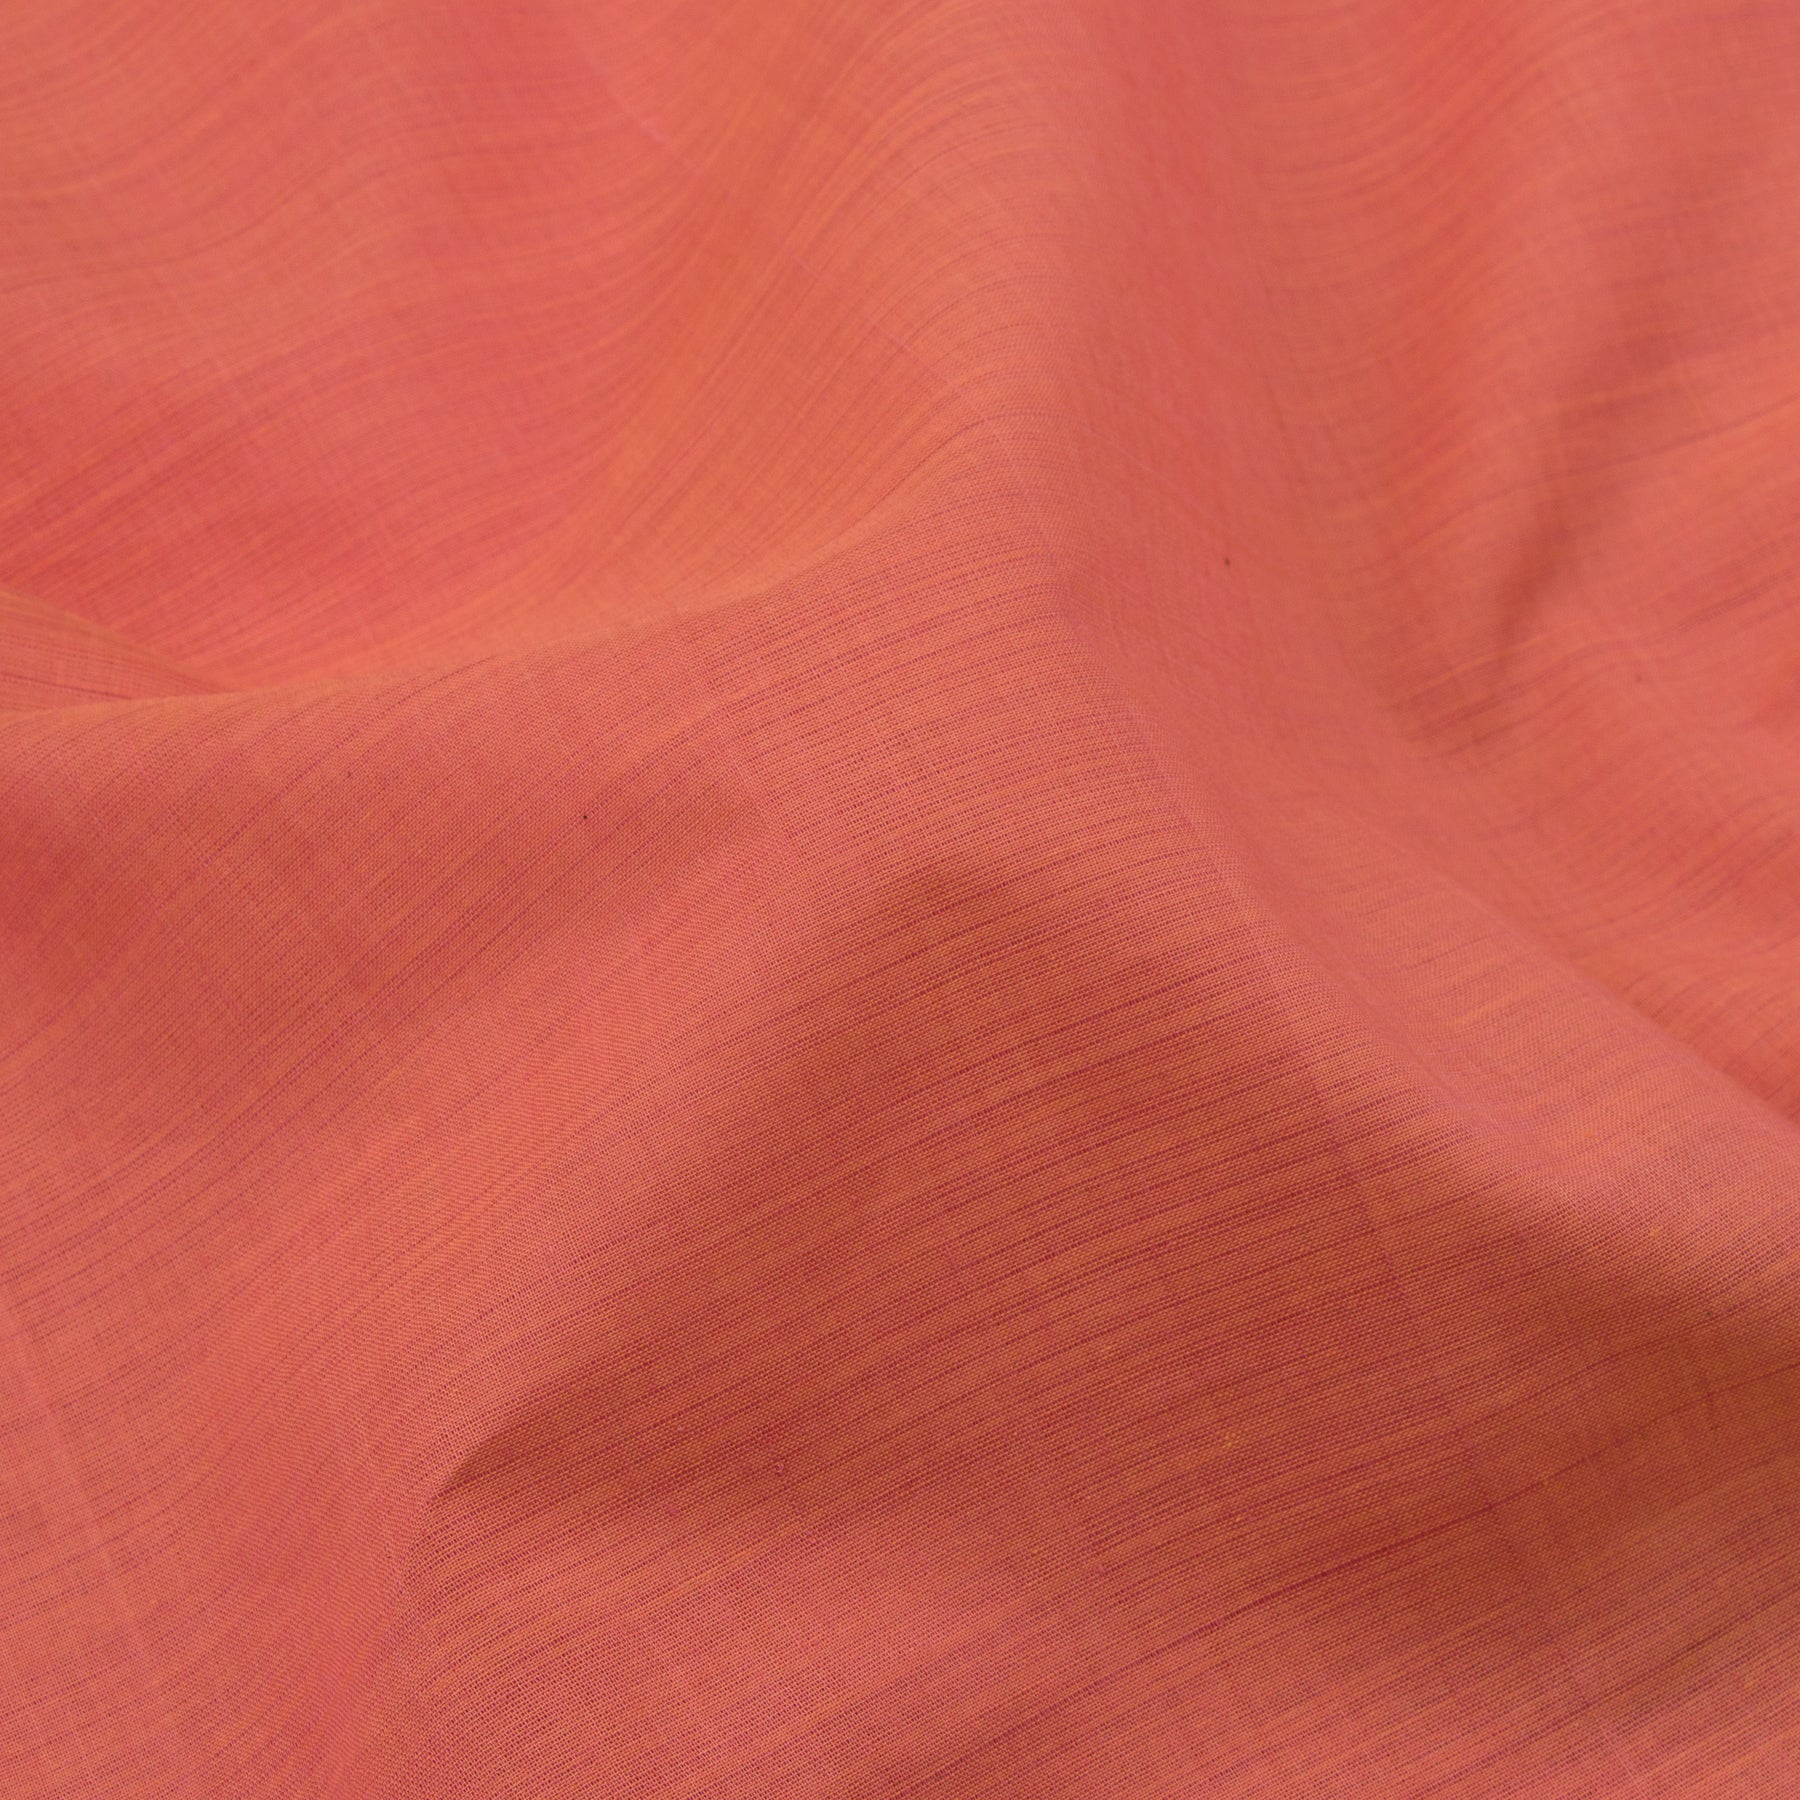 Kanakavalli Mangalgiri Cotton Sari 22-261-HS003-02881 - Fabric View